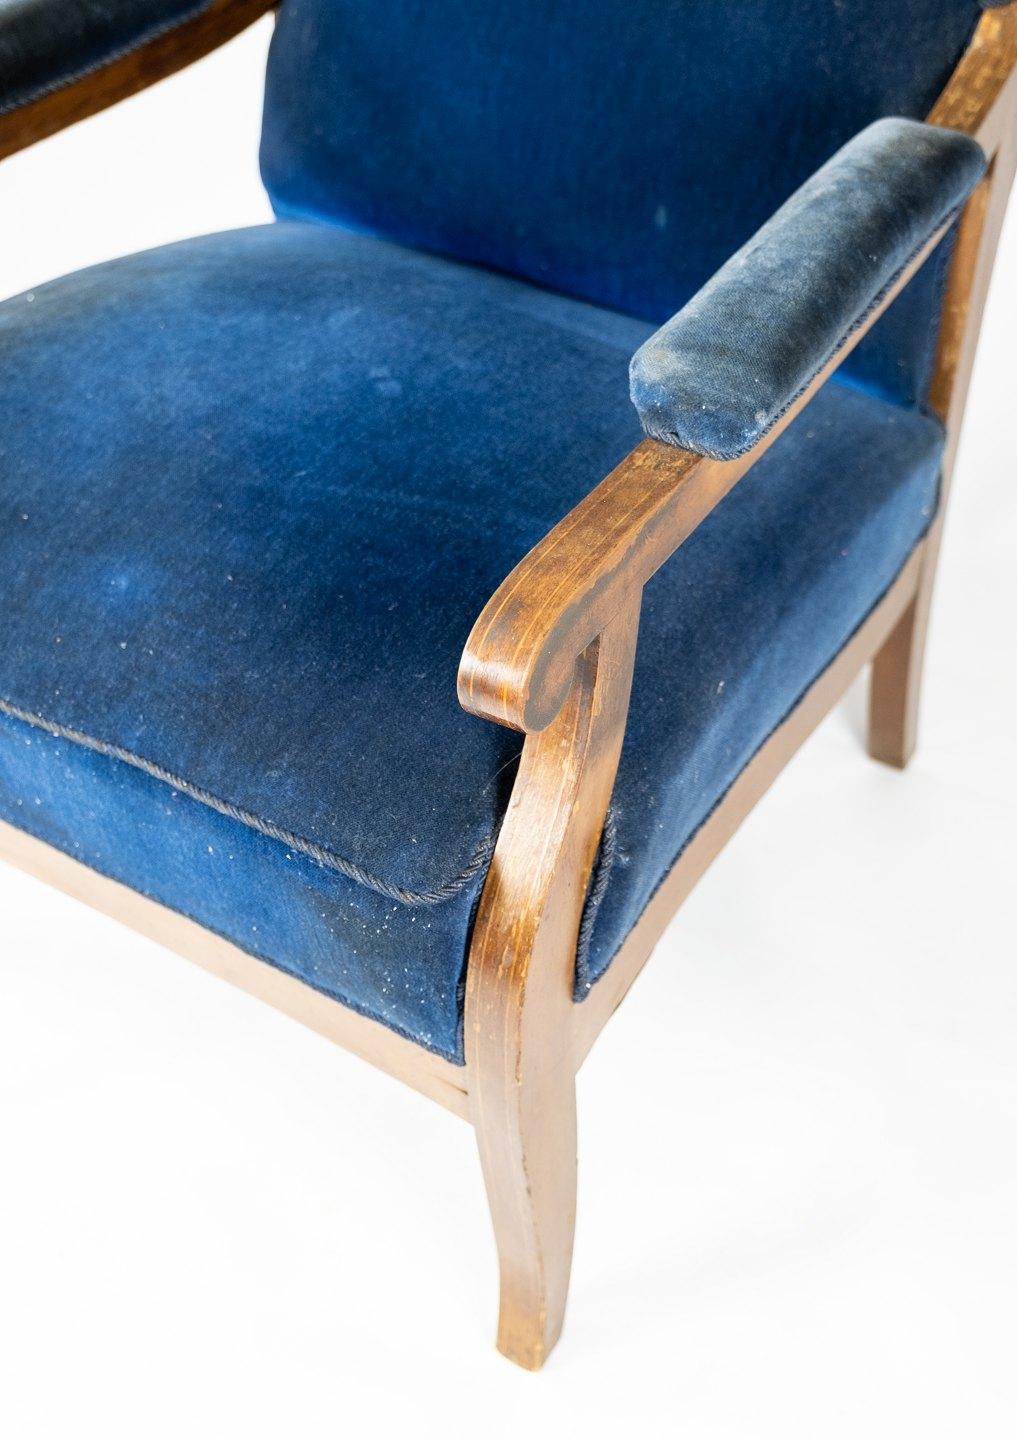 Mit blauem Samt gepolsterter Sessel aus Mahagoniholz, entworfen von Fritz Henningsen. Der Stuhl ist in tollem Vintage-Zustand.